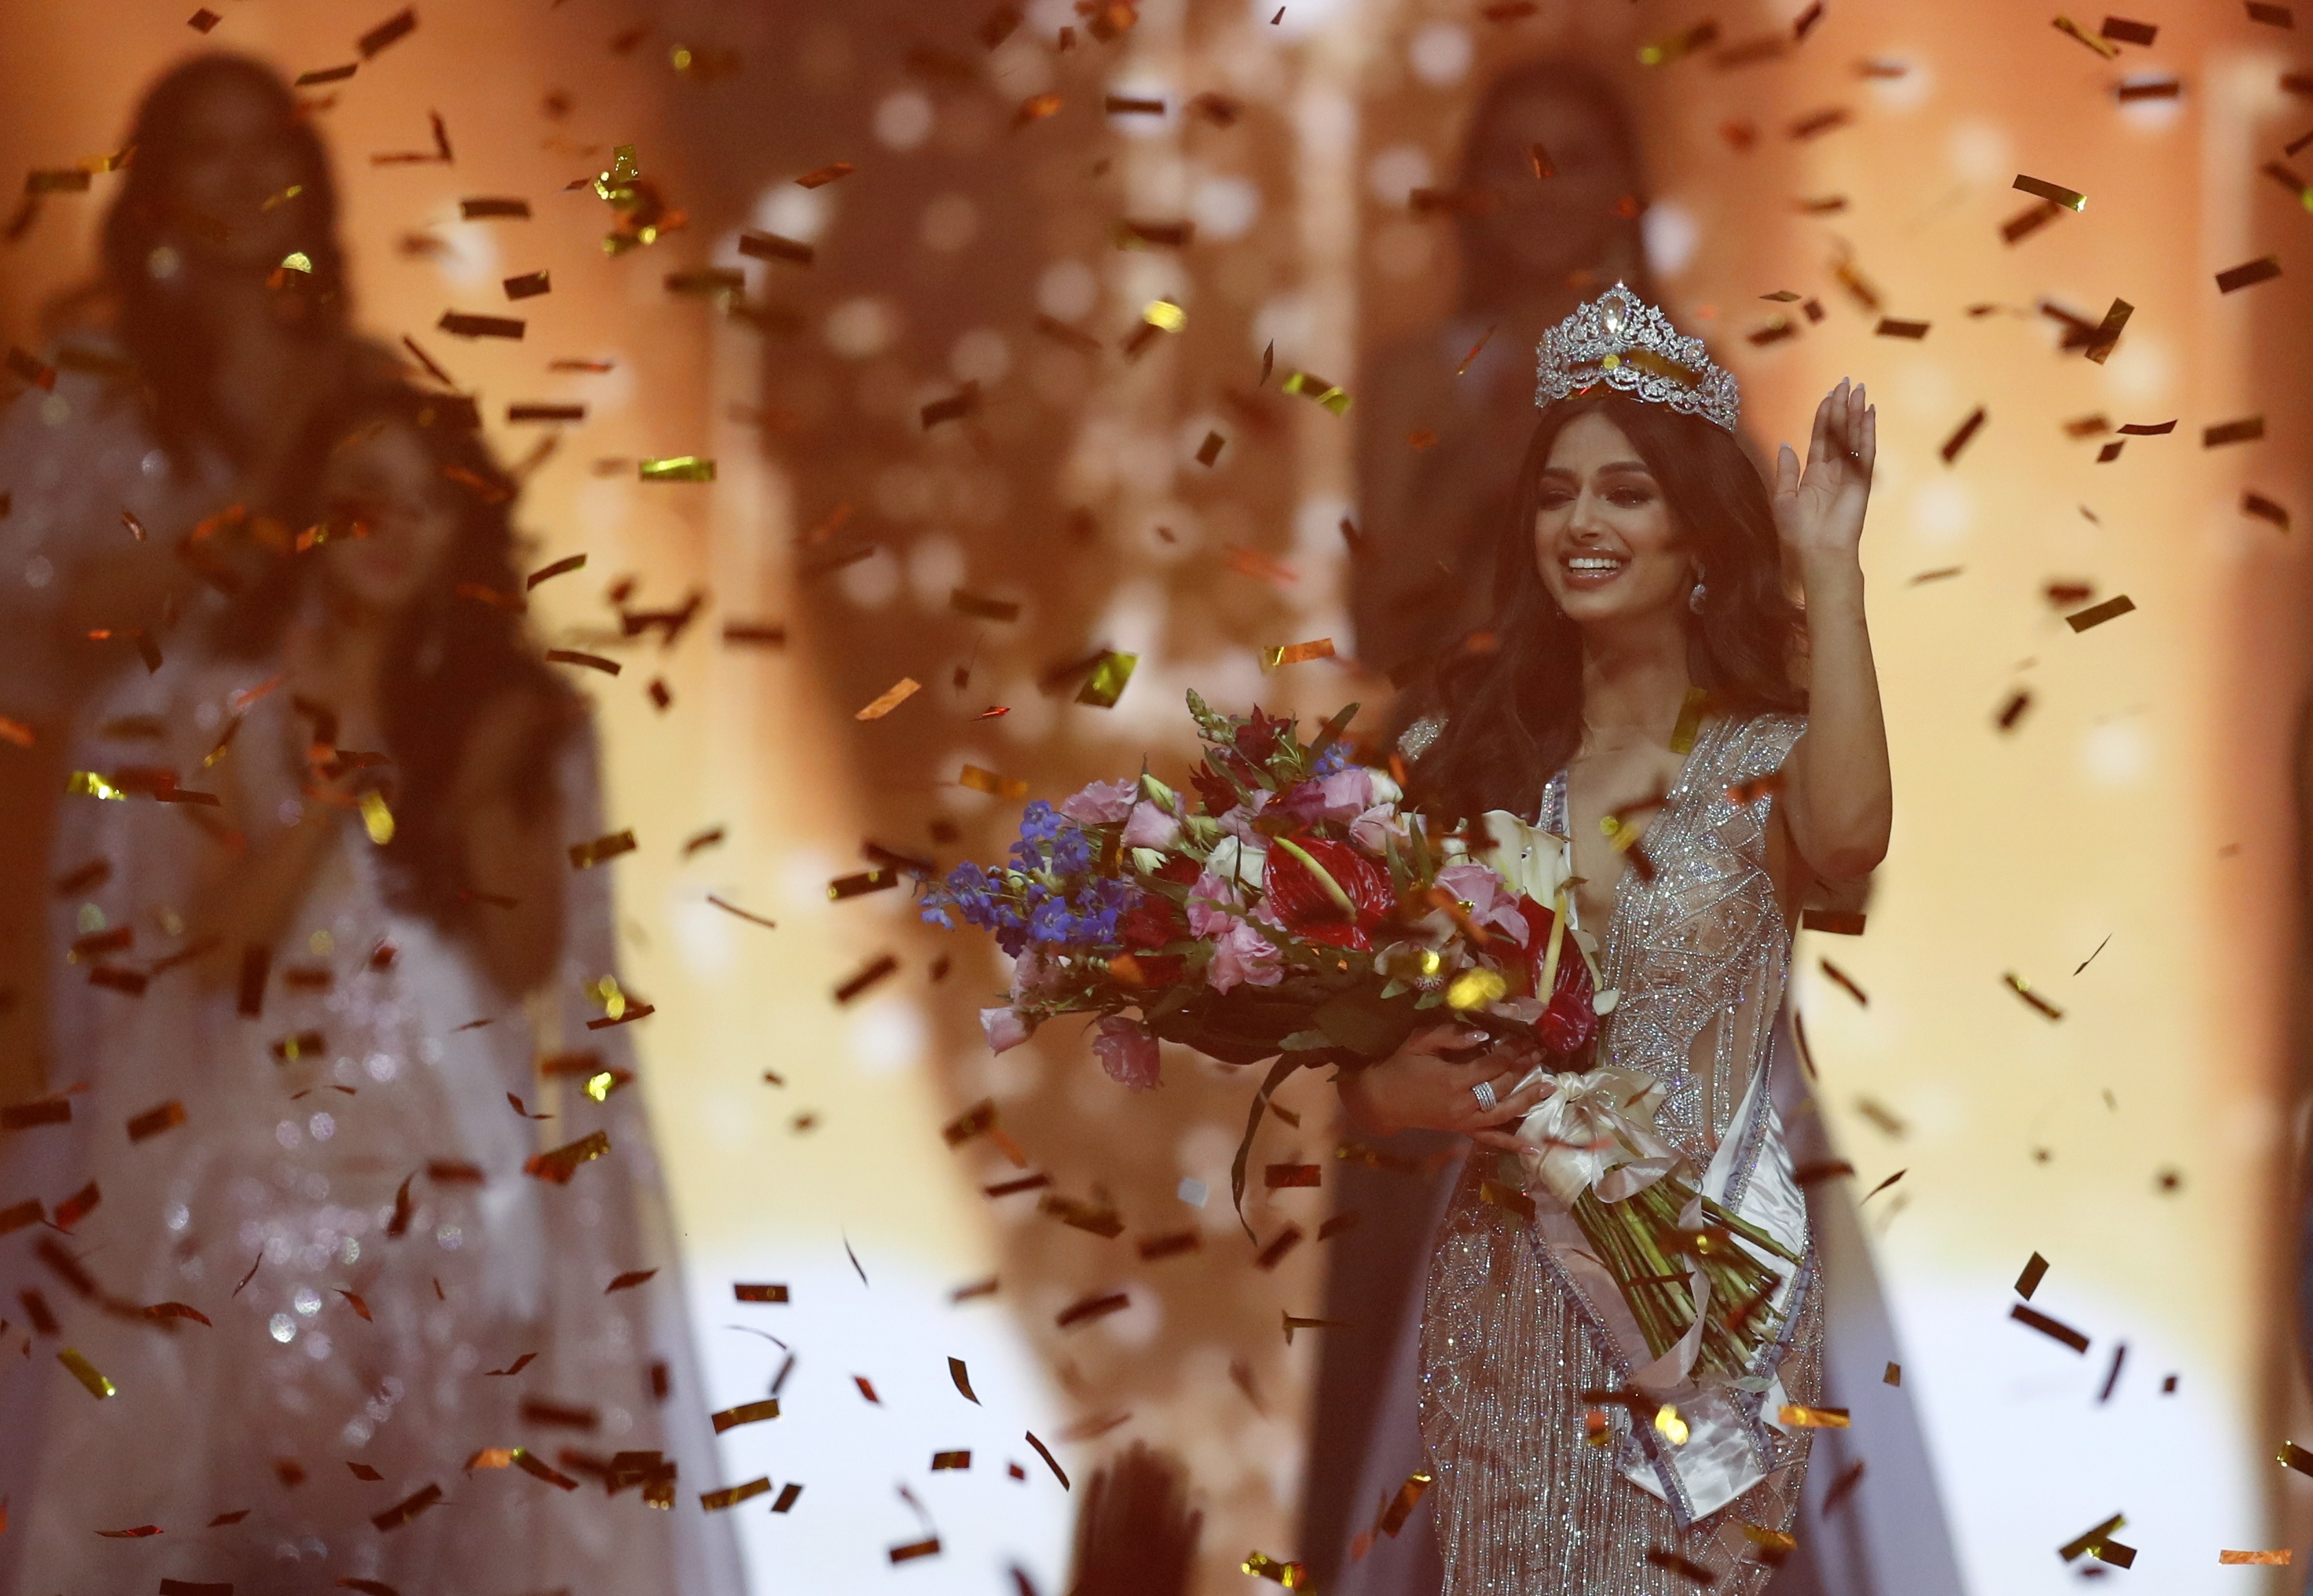 Harnaaz Sandhu, de La India fue coronada el 12 de diciembre como la nueva Miss Universo. (Foto Prensa Libre: EFE)